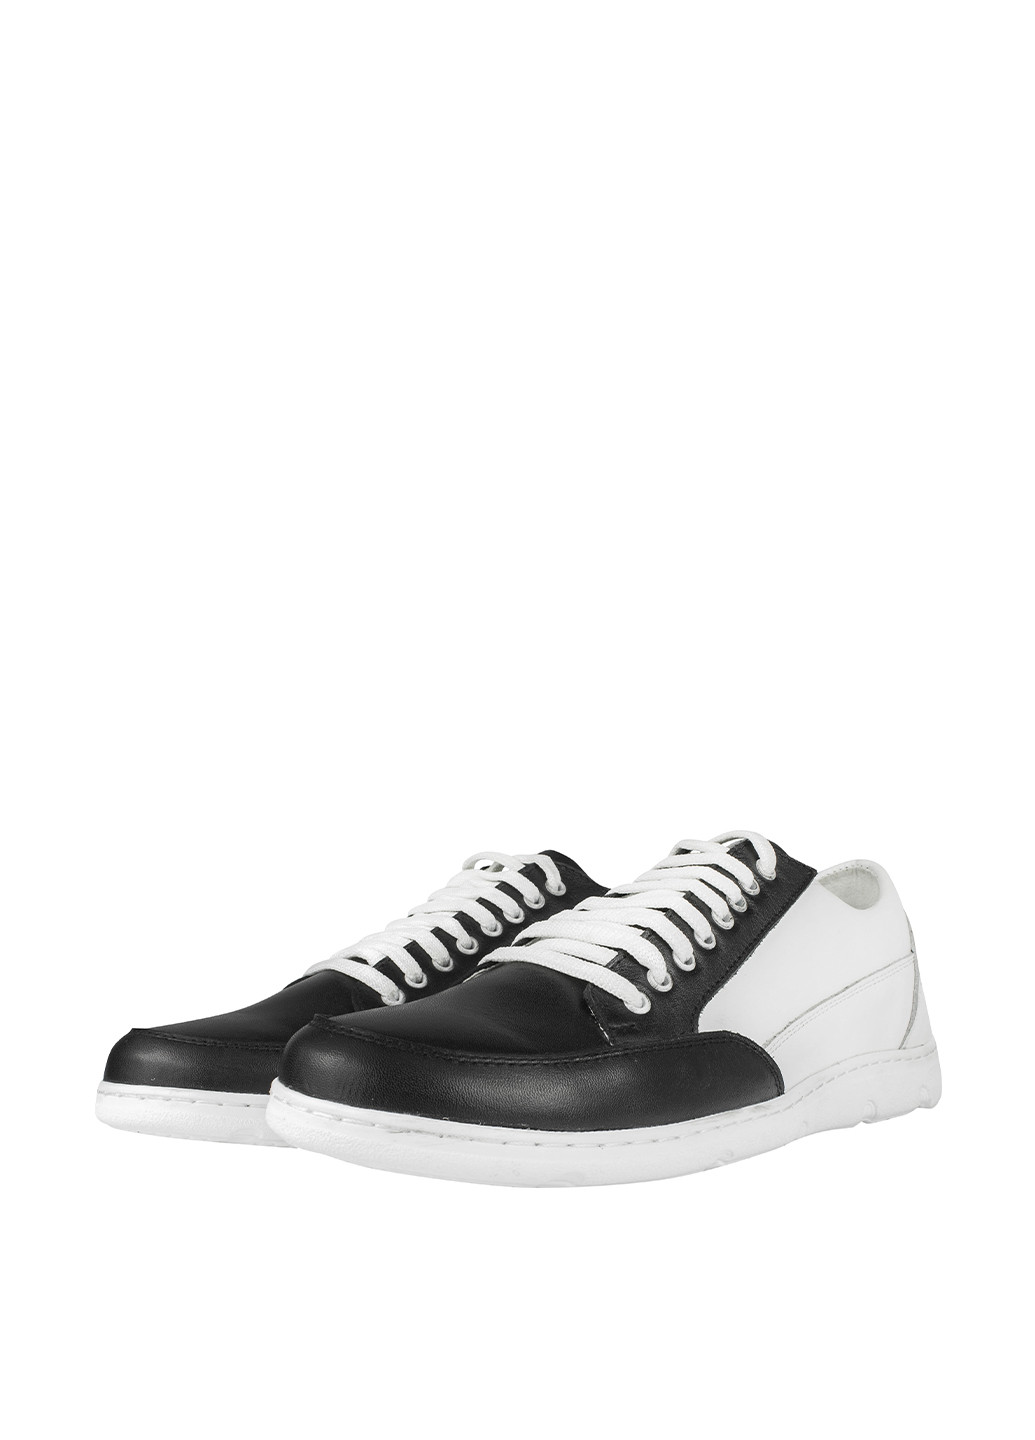 Черно-белые спортивные туфли Libero на шнурках